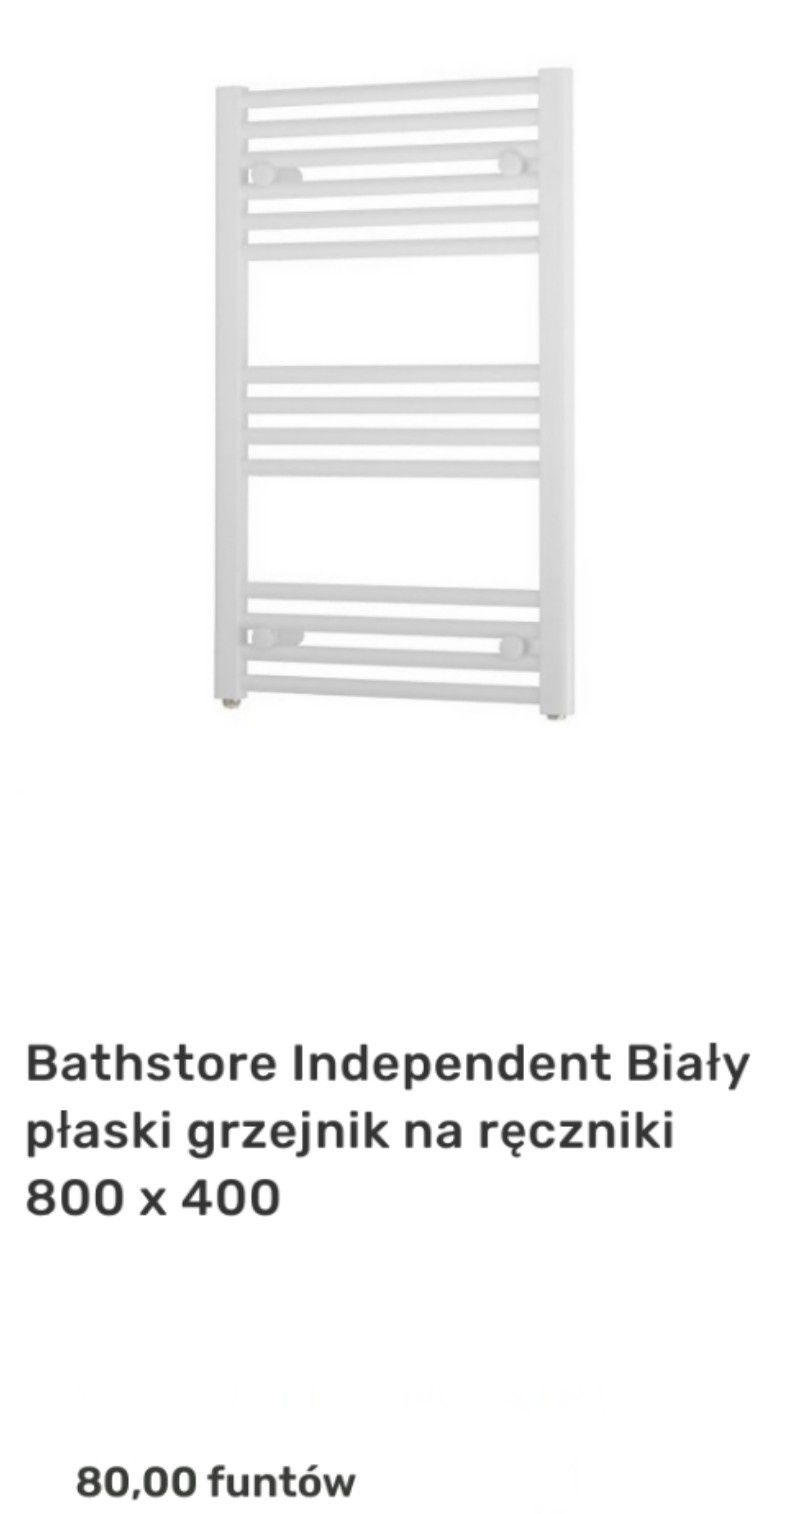 Bathstore Independent Biały płaski grzejnik na ręczniki 800 x 400